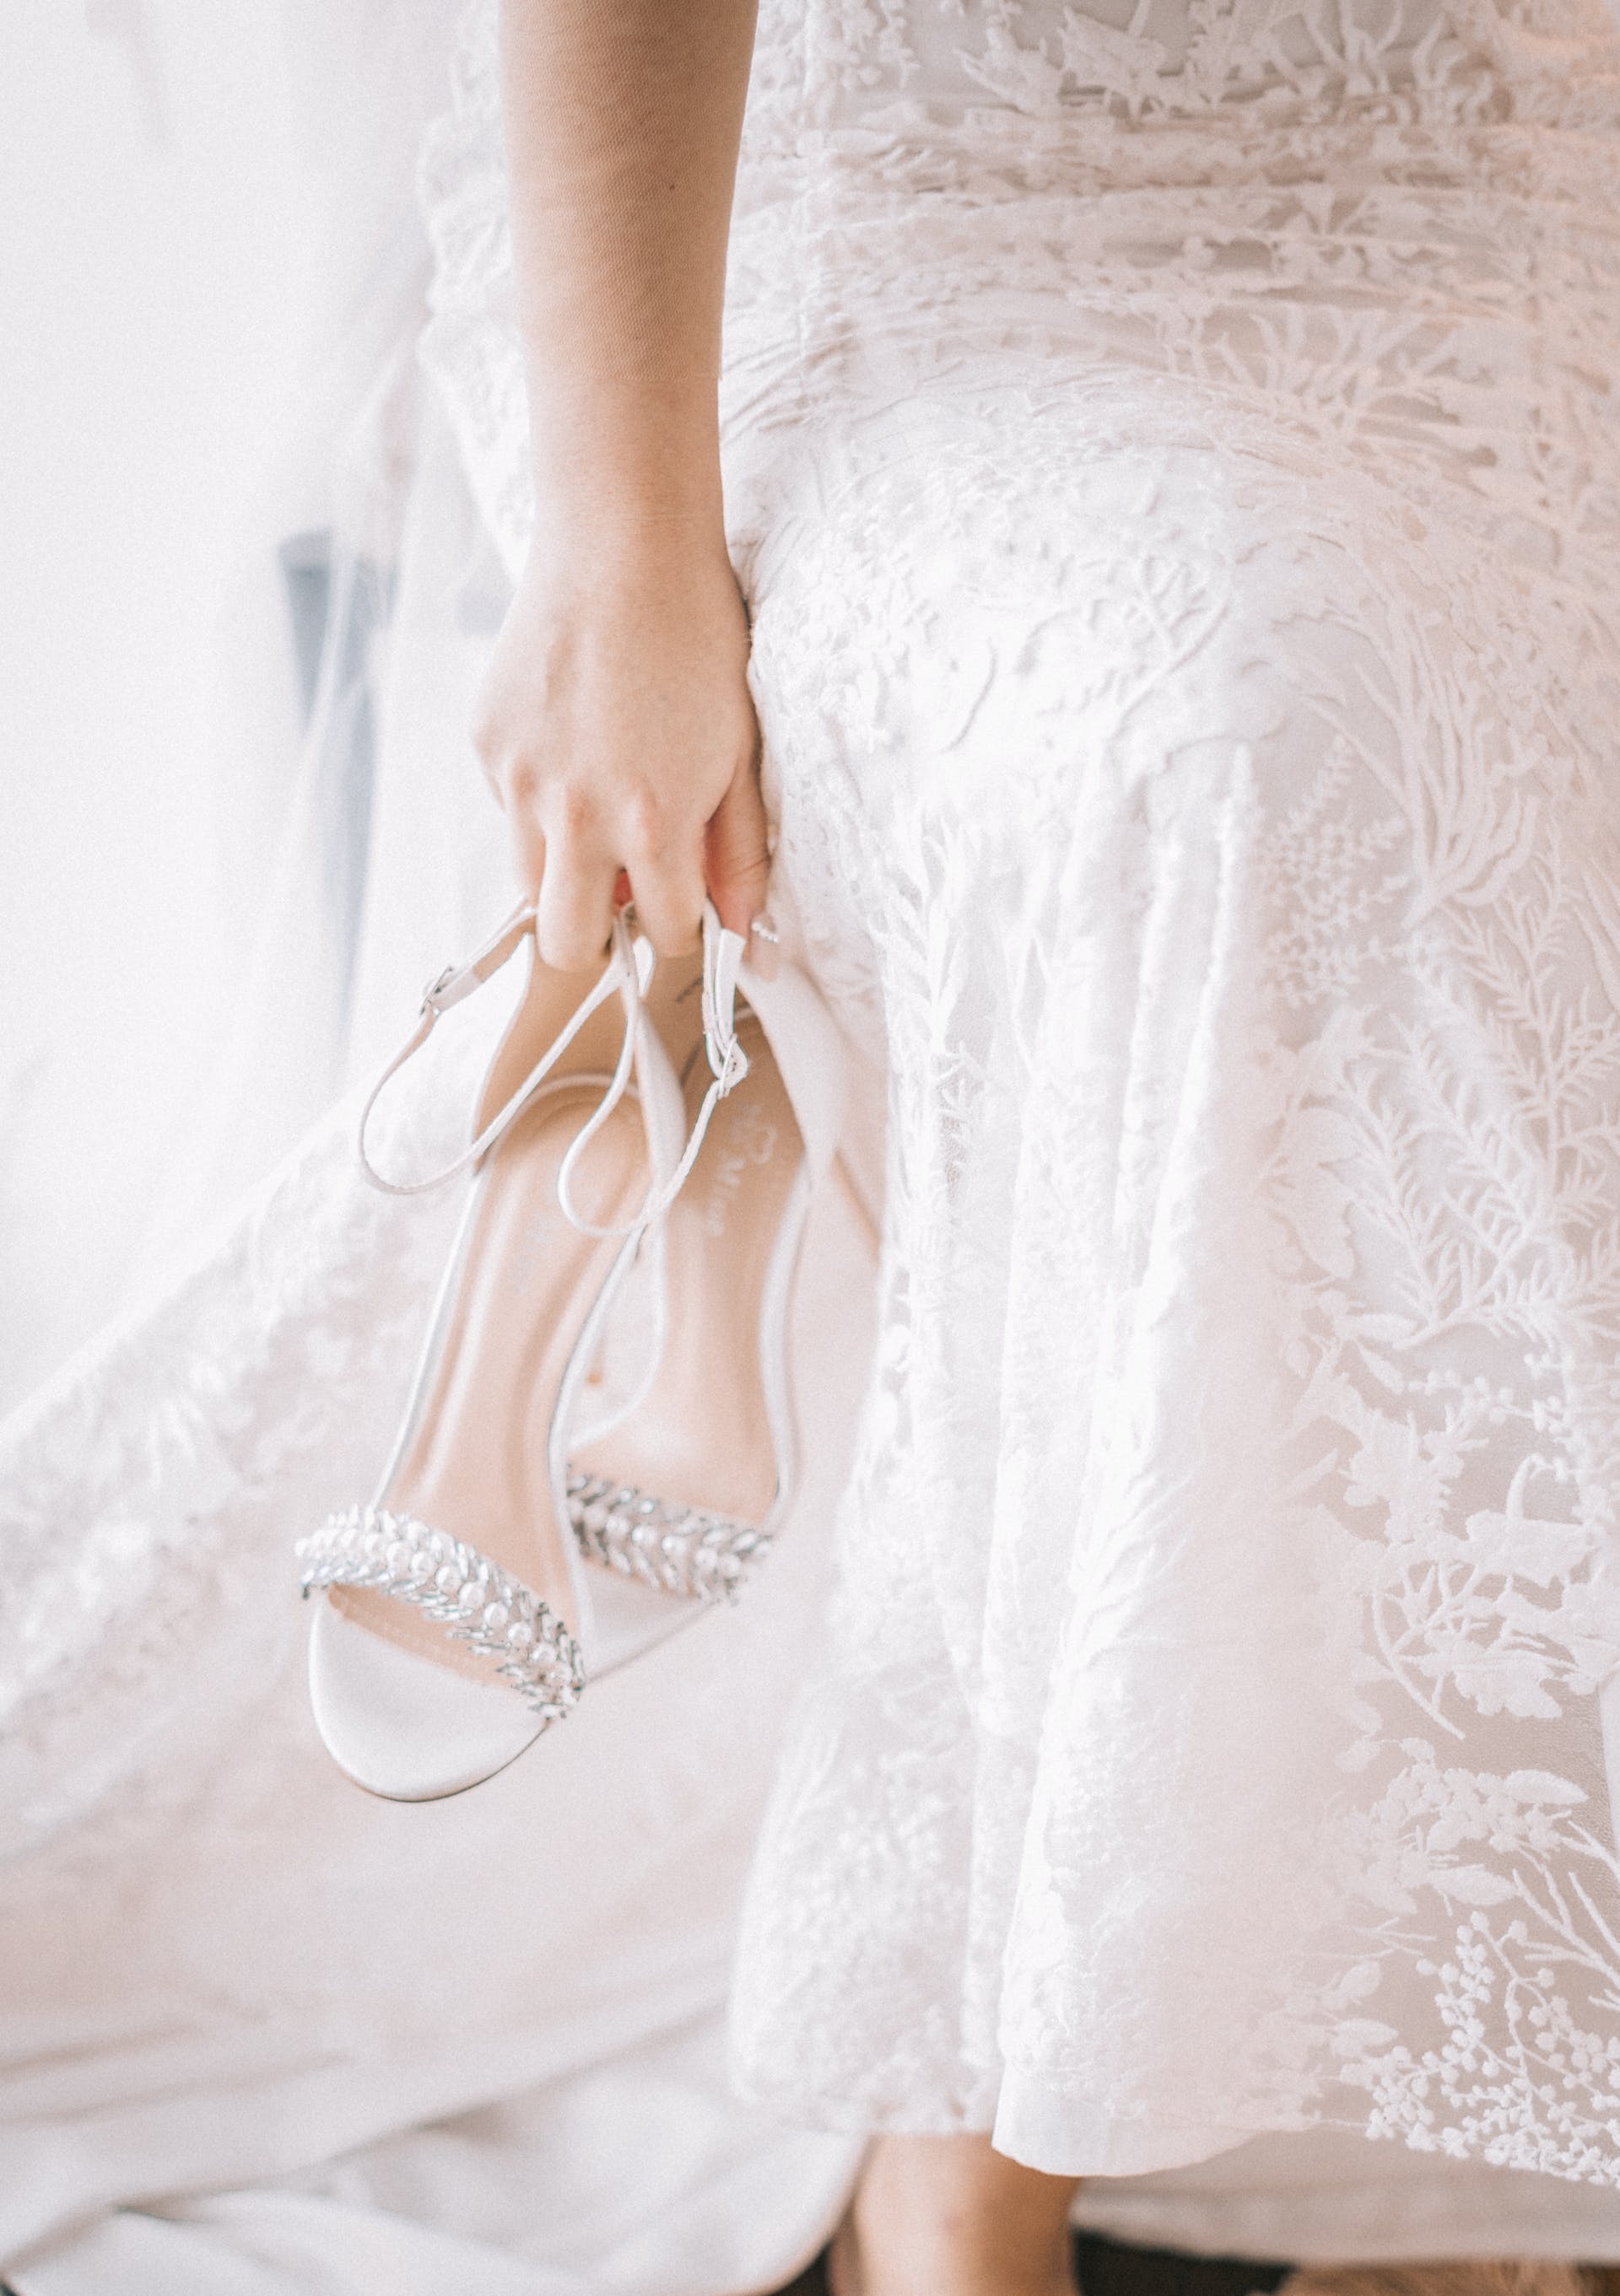 La mariée tient ses chaussures | Source : Pexels